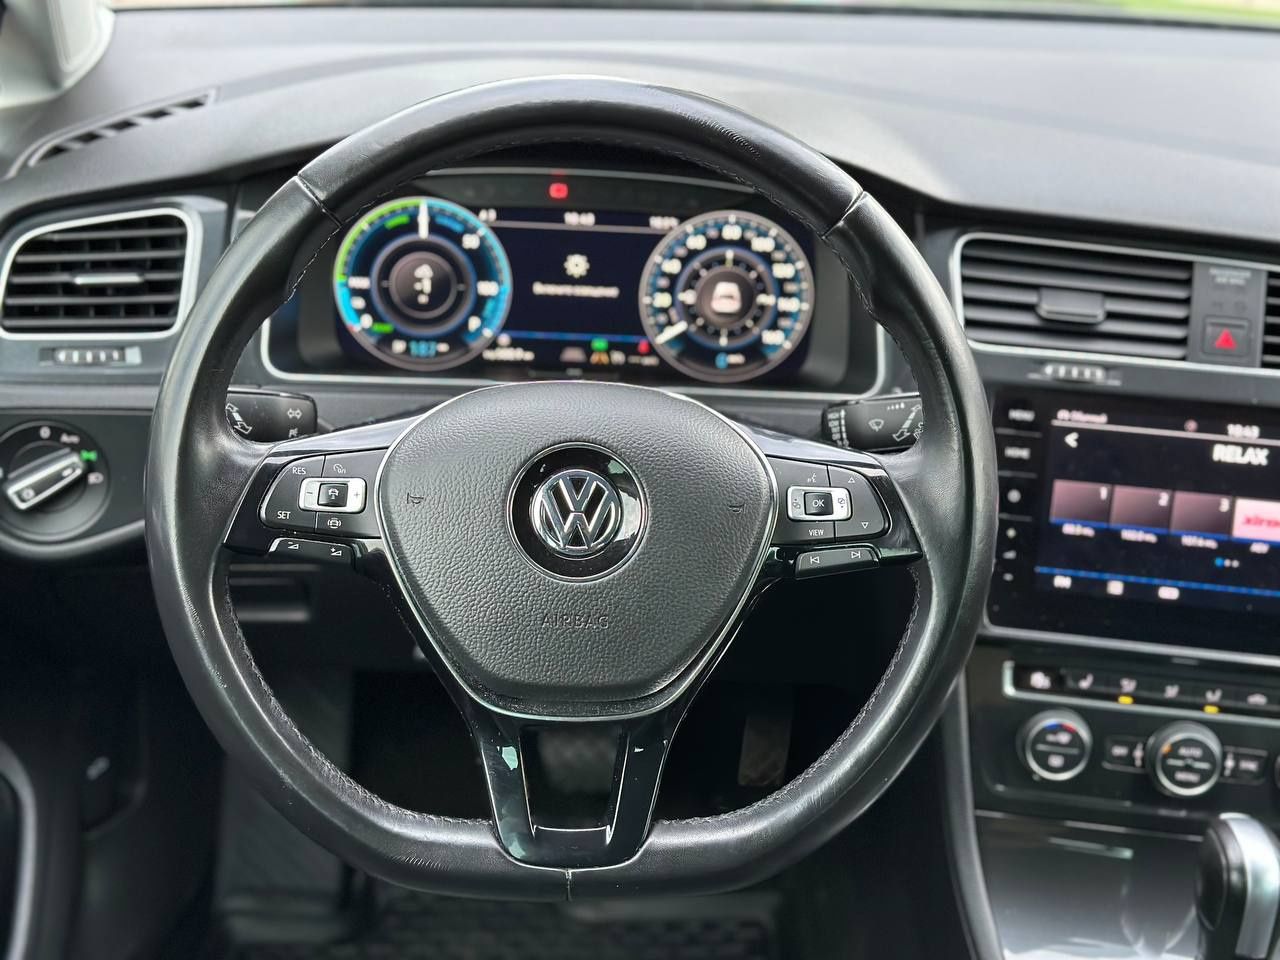 Volkswagen E-Golf 2020 року, 36квт, автомат, 88т.км.
Електричний ав